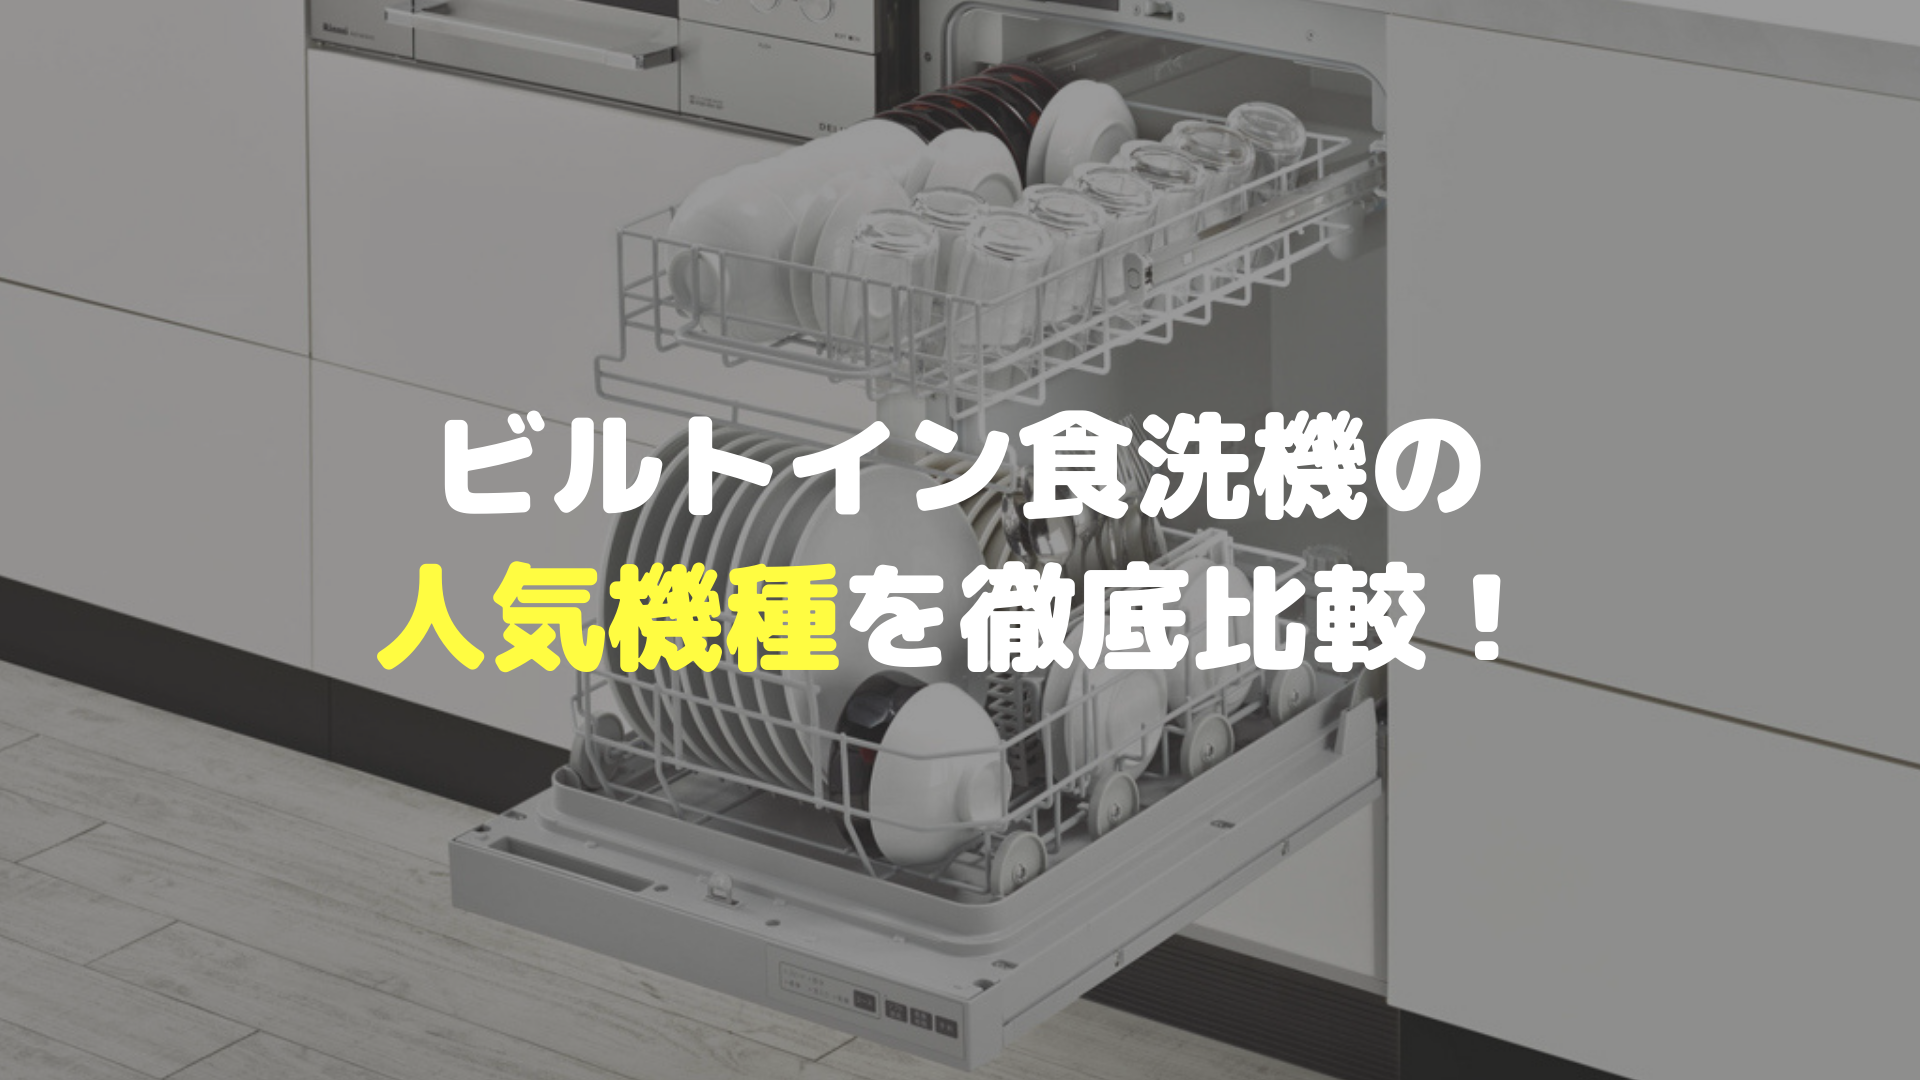 おすすめのビルトイン食洗機はコレ 人気機種を徹底比較 マルタケブログ